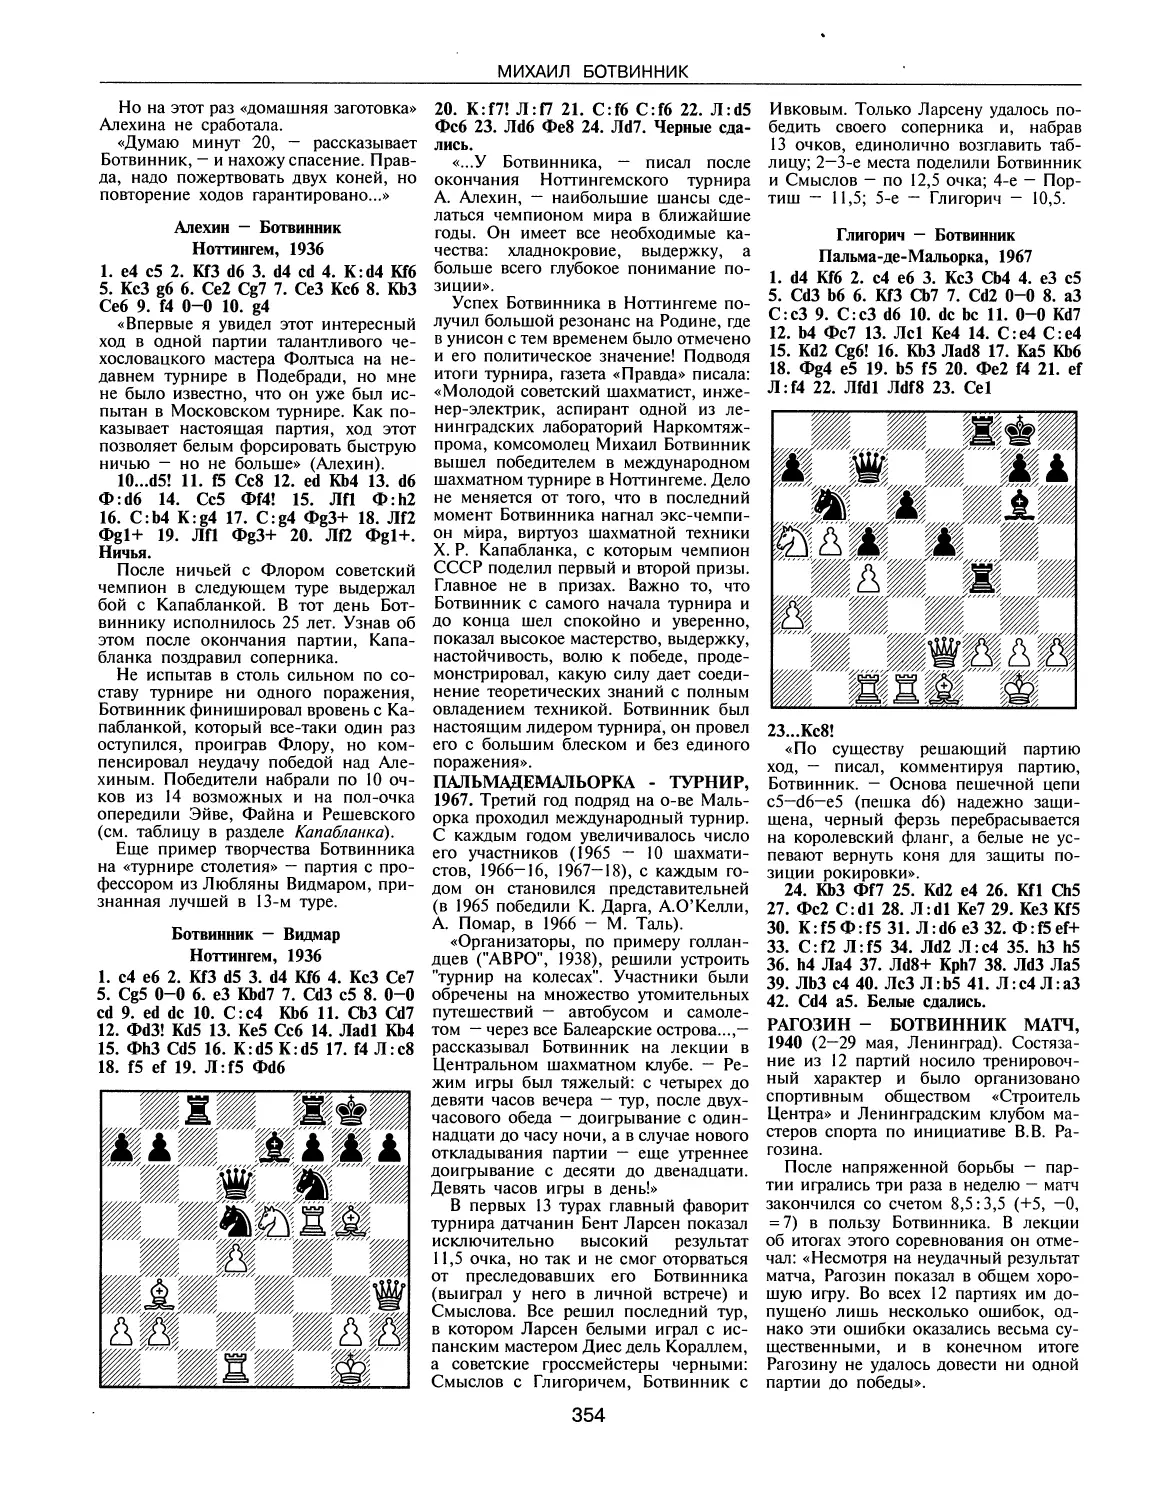 Пальма-де-Мальорка-турнир, 1967
Рагозин — Ботвинник матч, 1940